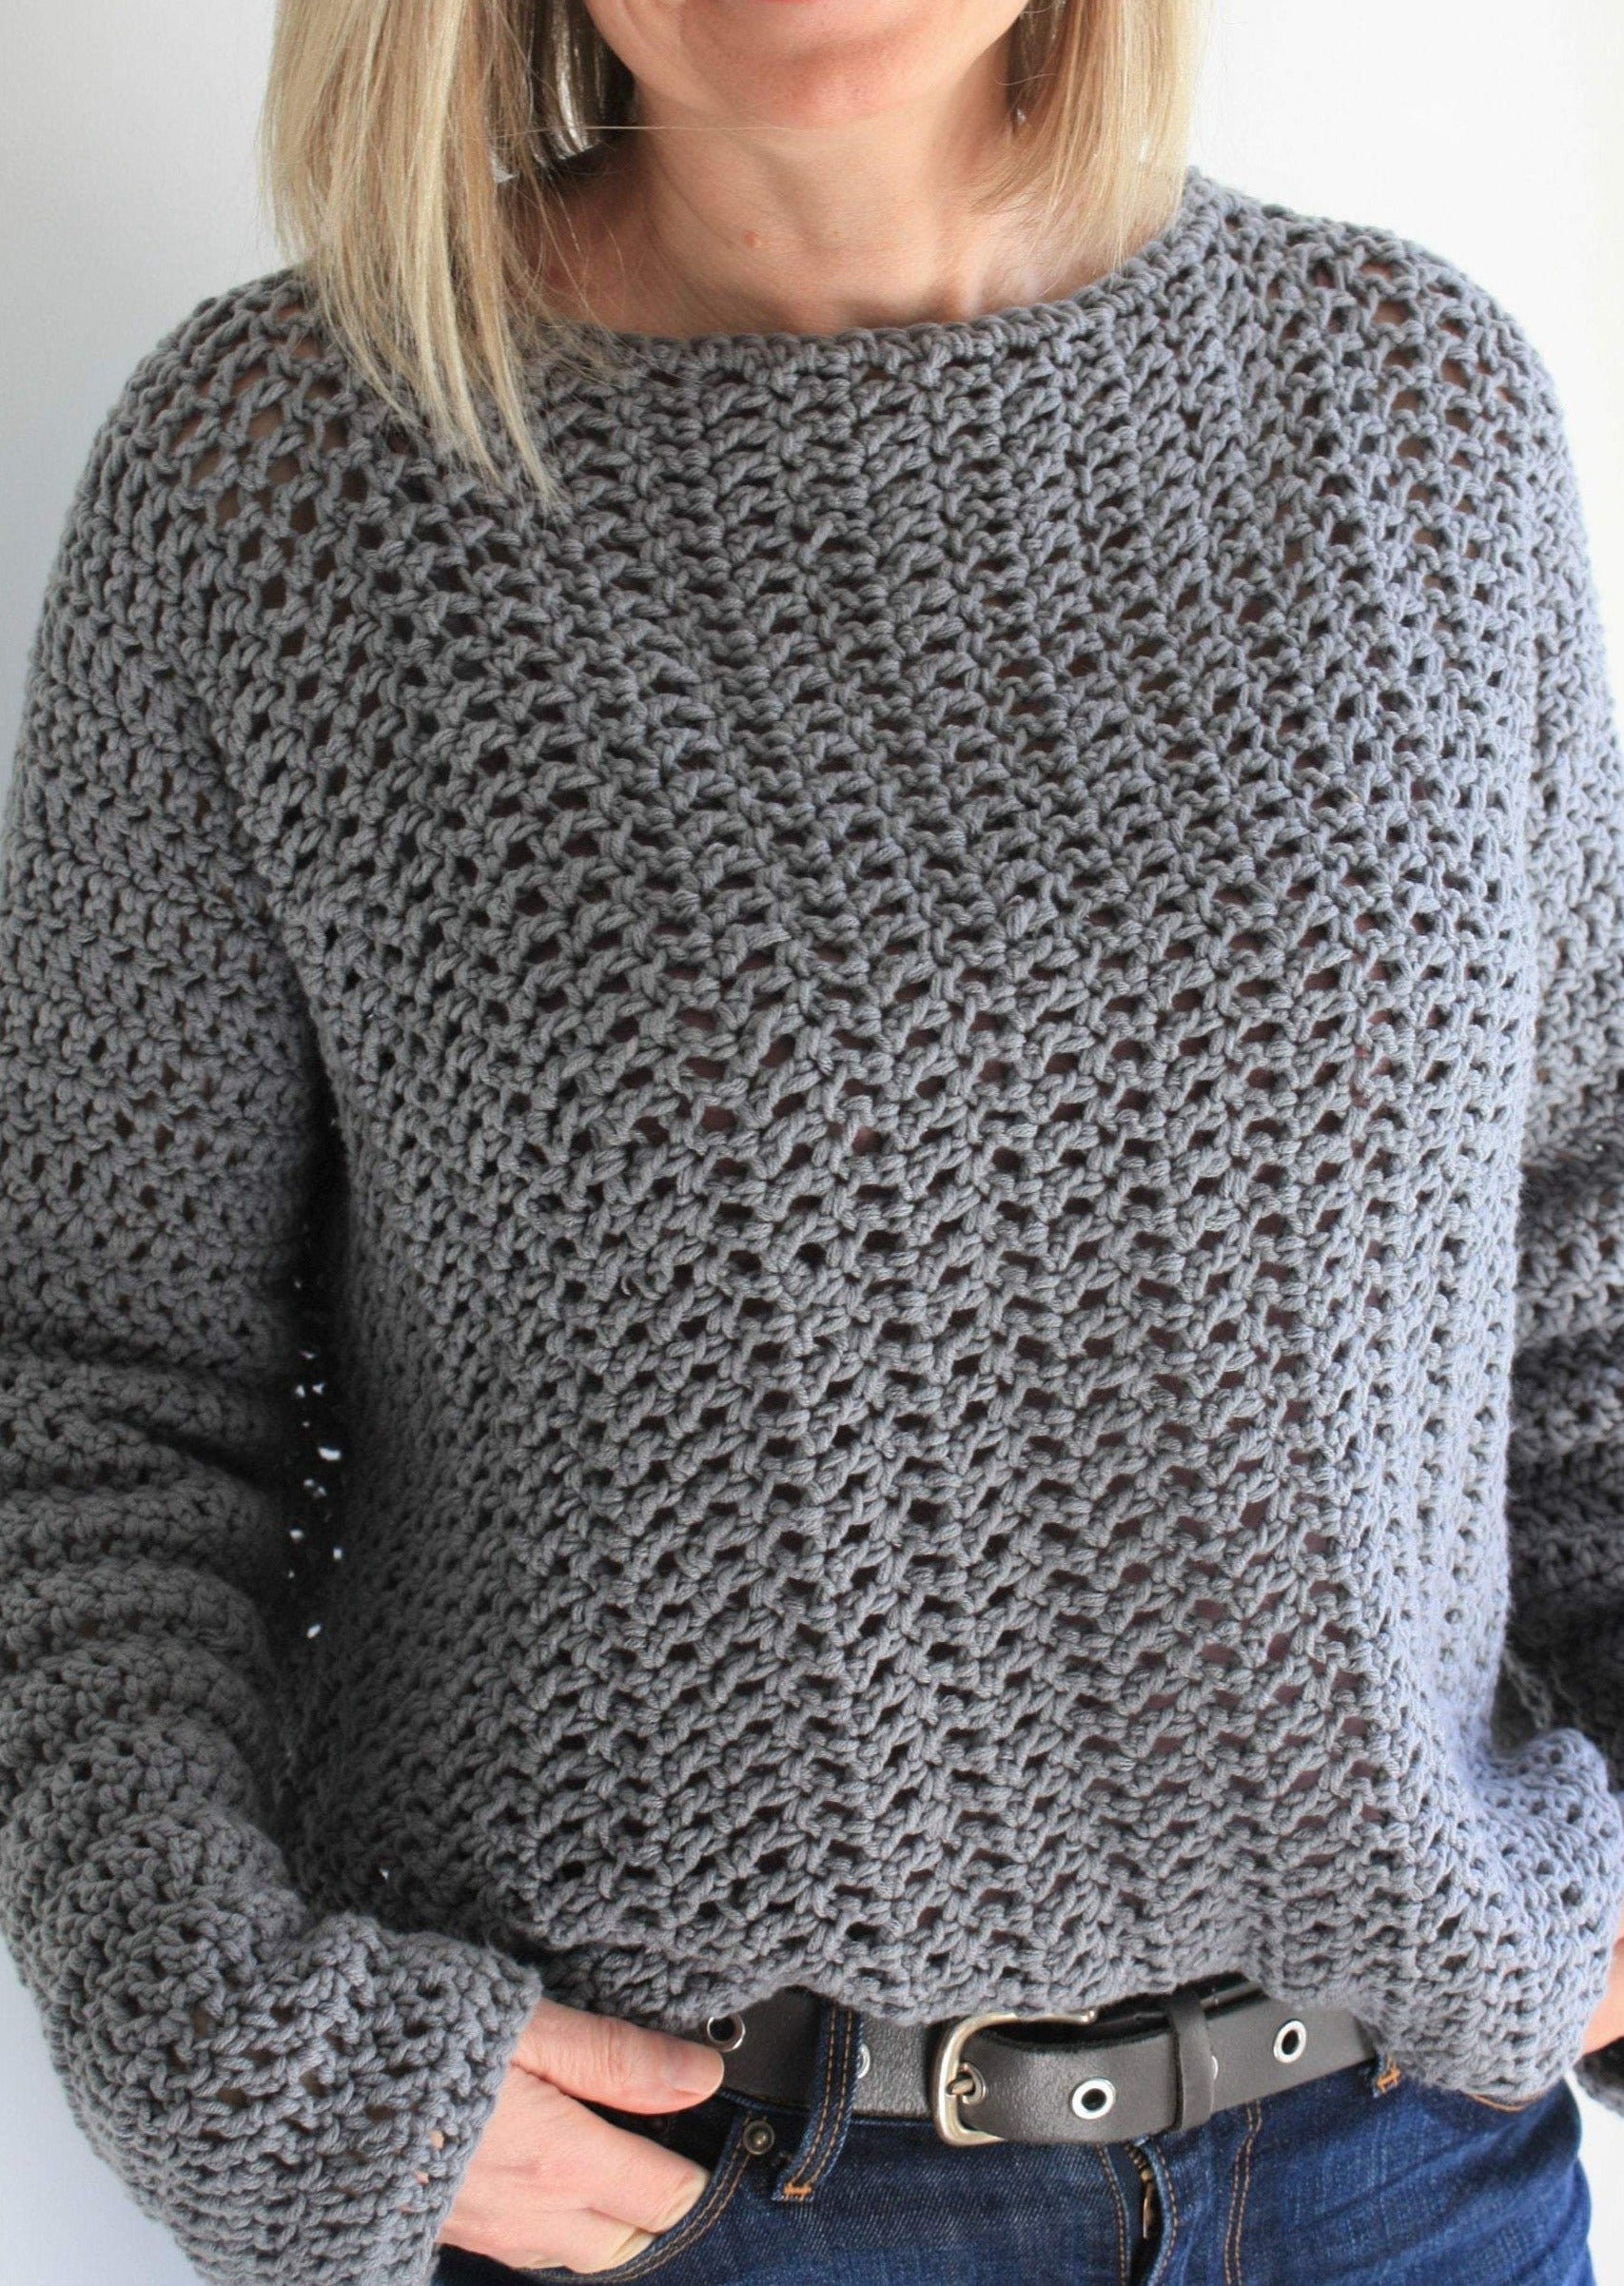 Fall Slouchy Sweater Crochet PATTERN